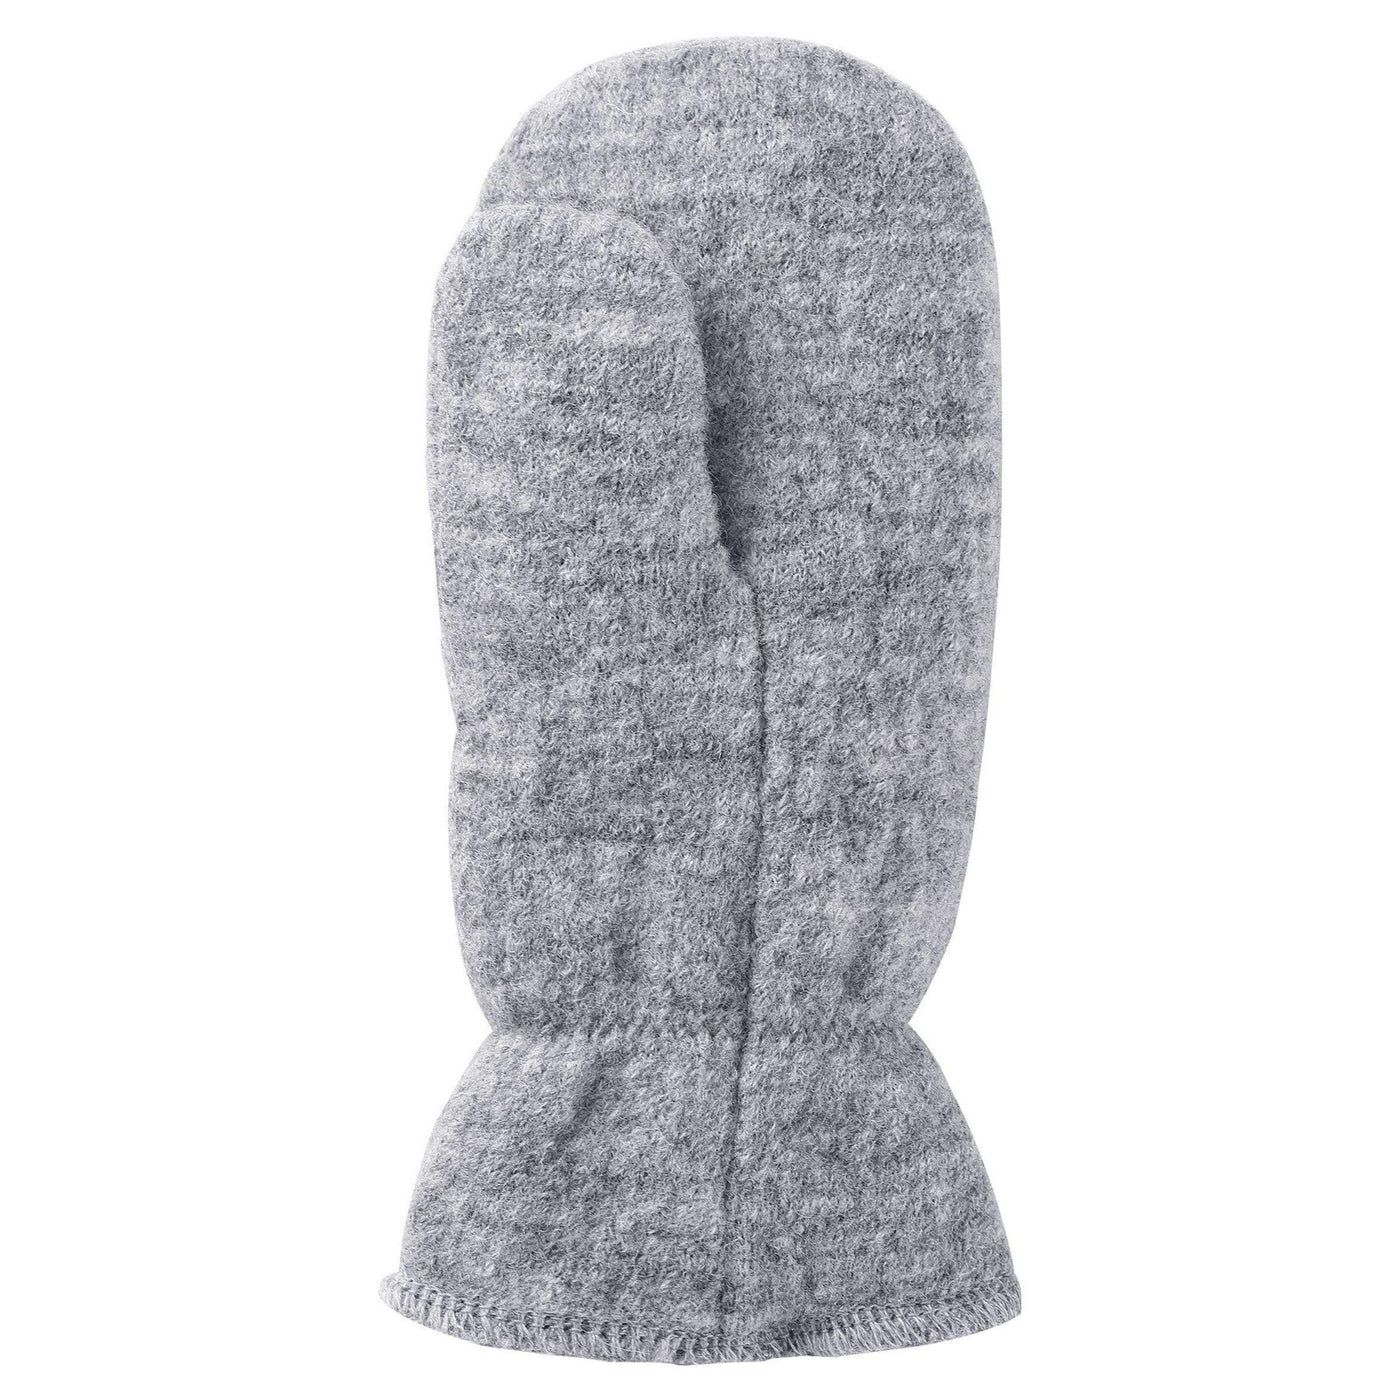 SnowKids Accessories Reima Hangen Knitted Wool Mittens - Grey Melange